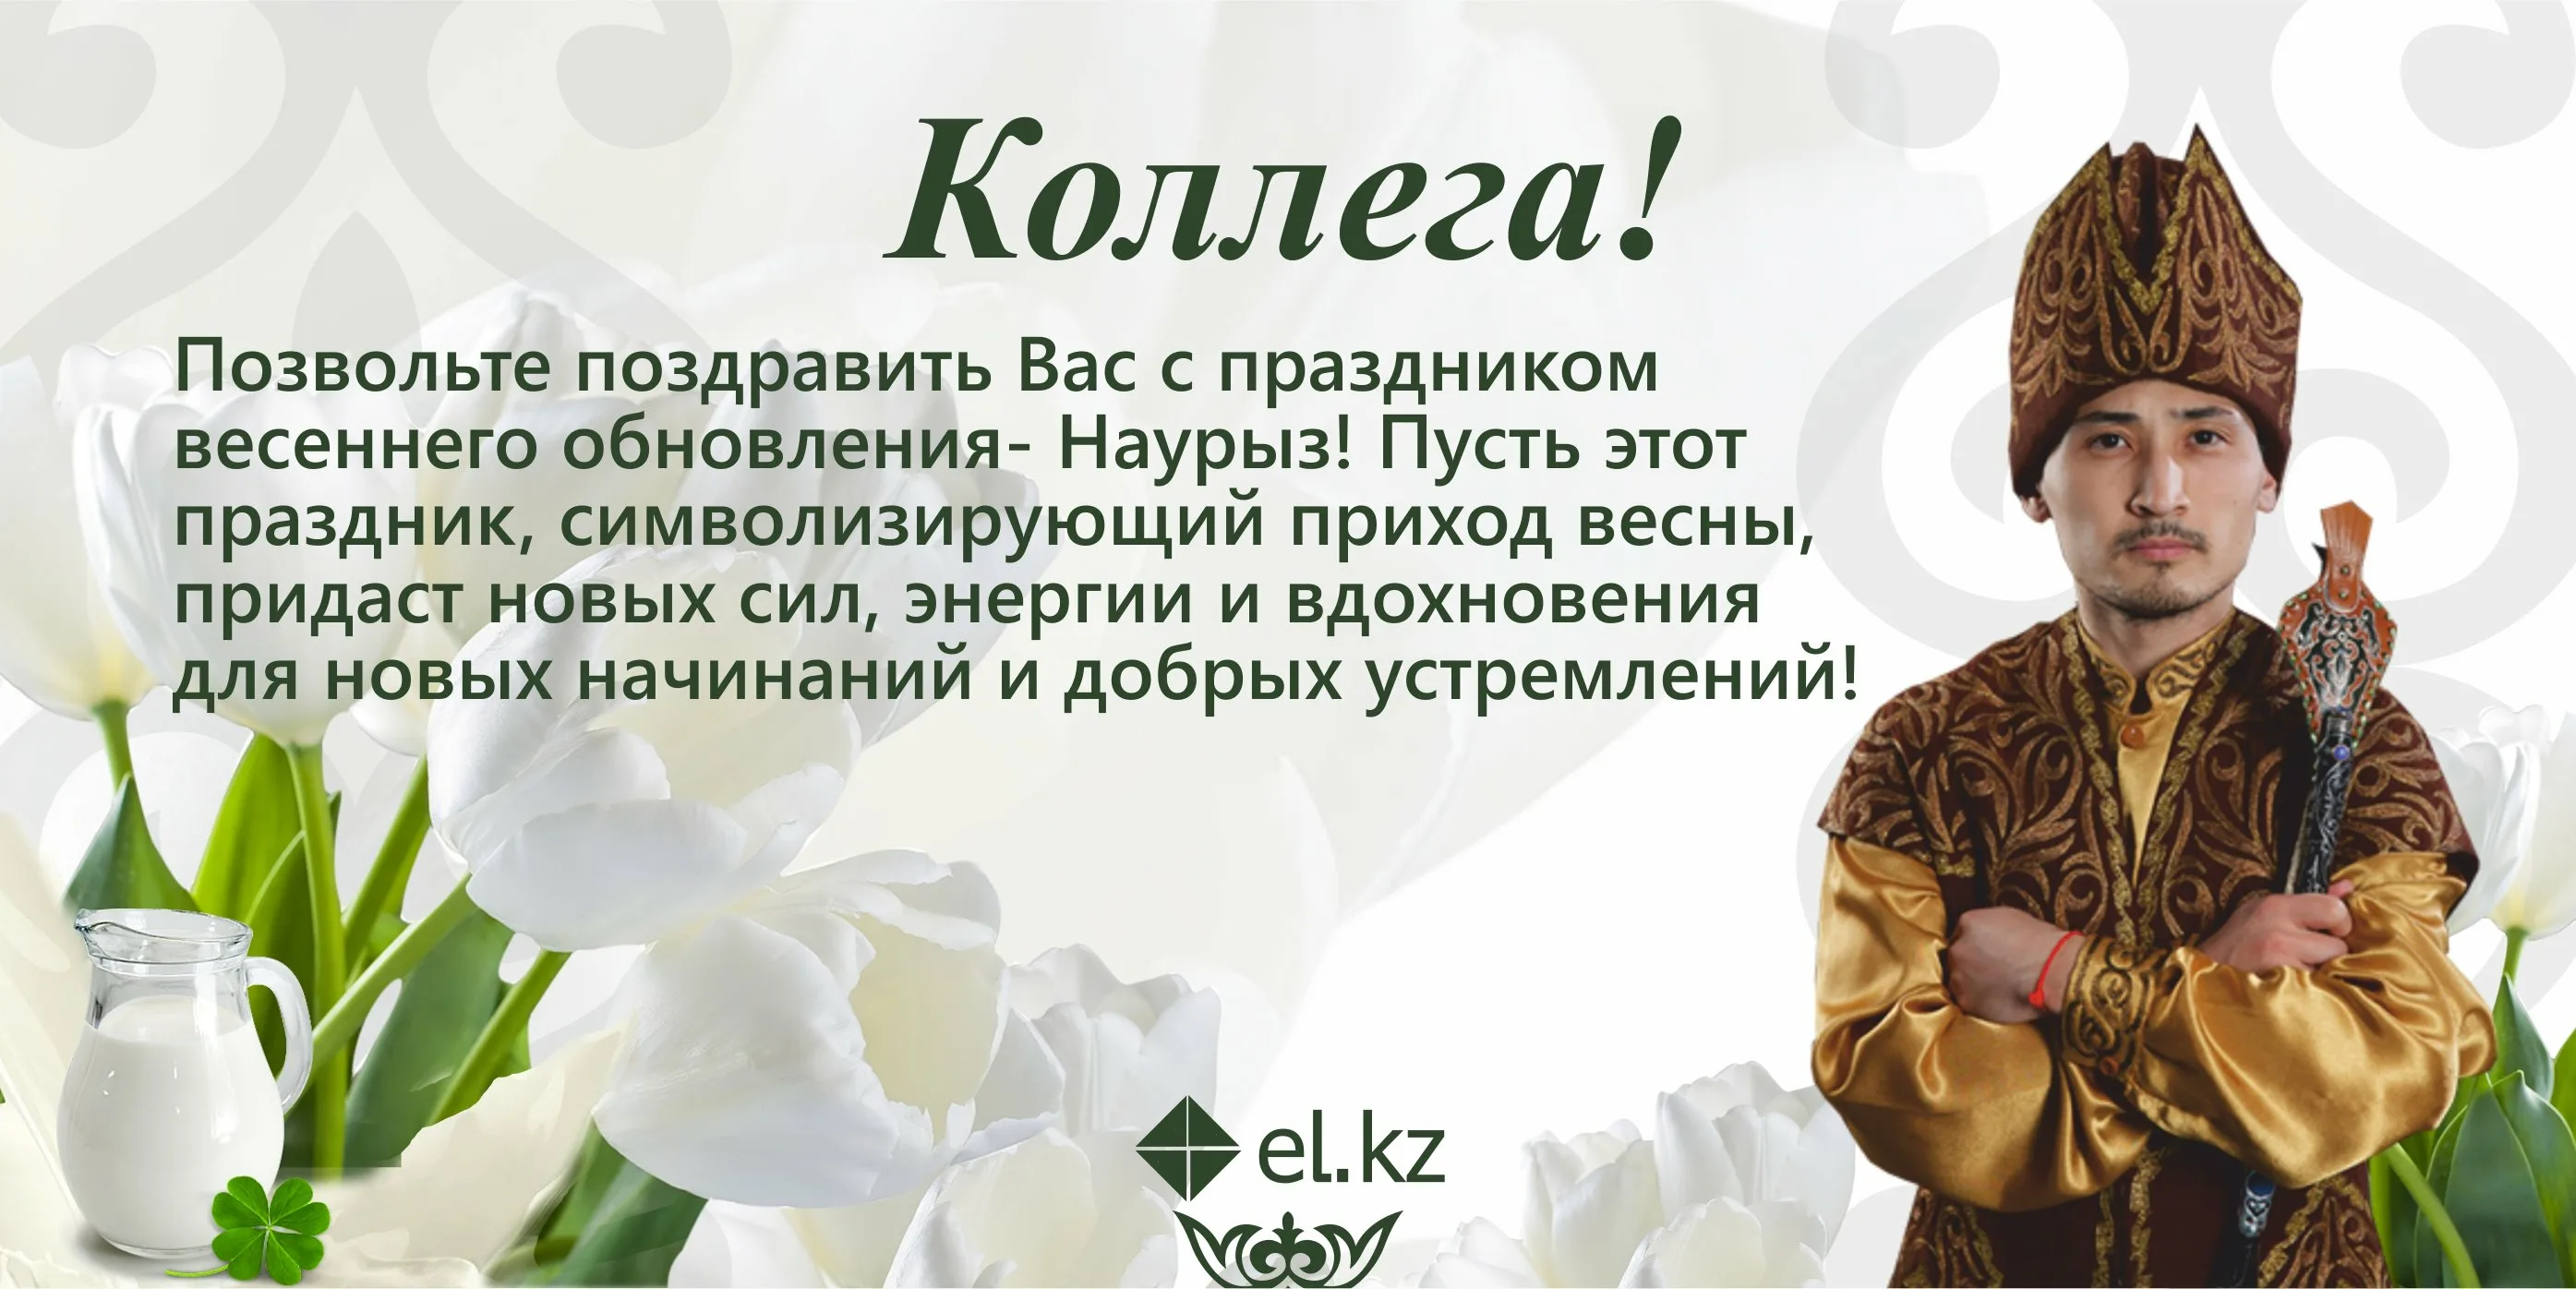 Красивое поздравление с наурызом на русском. Наурыз поздравление. Поздравление на казахском. Поздравление с Наурызом на казахском. Наурыз открытки с поздравлениями на казахском языке.